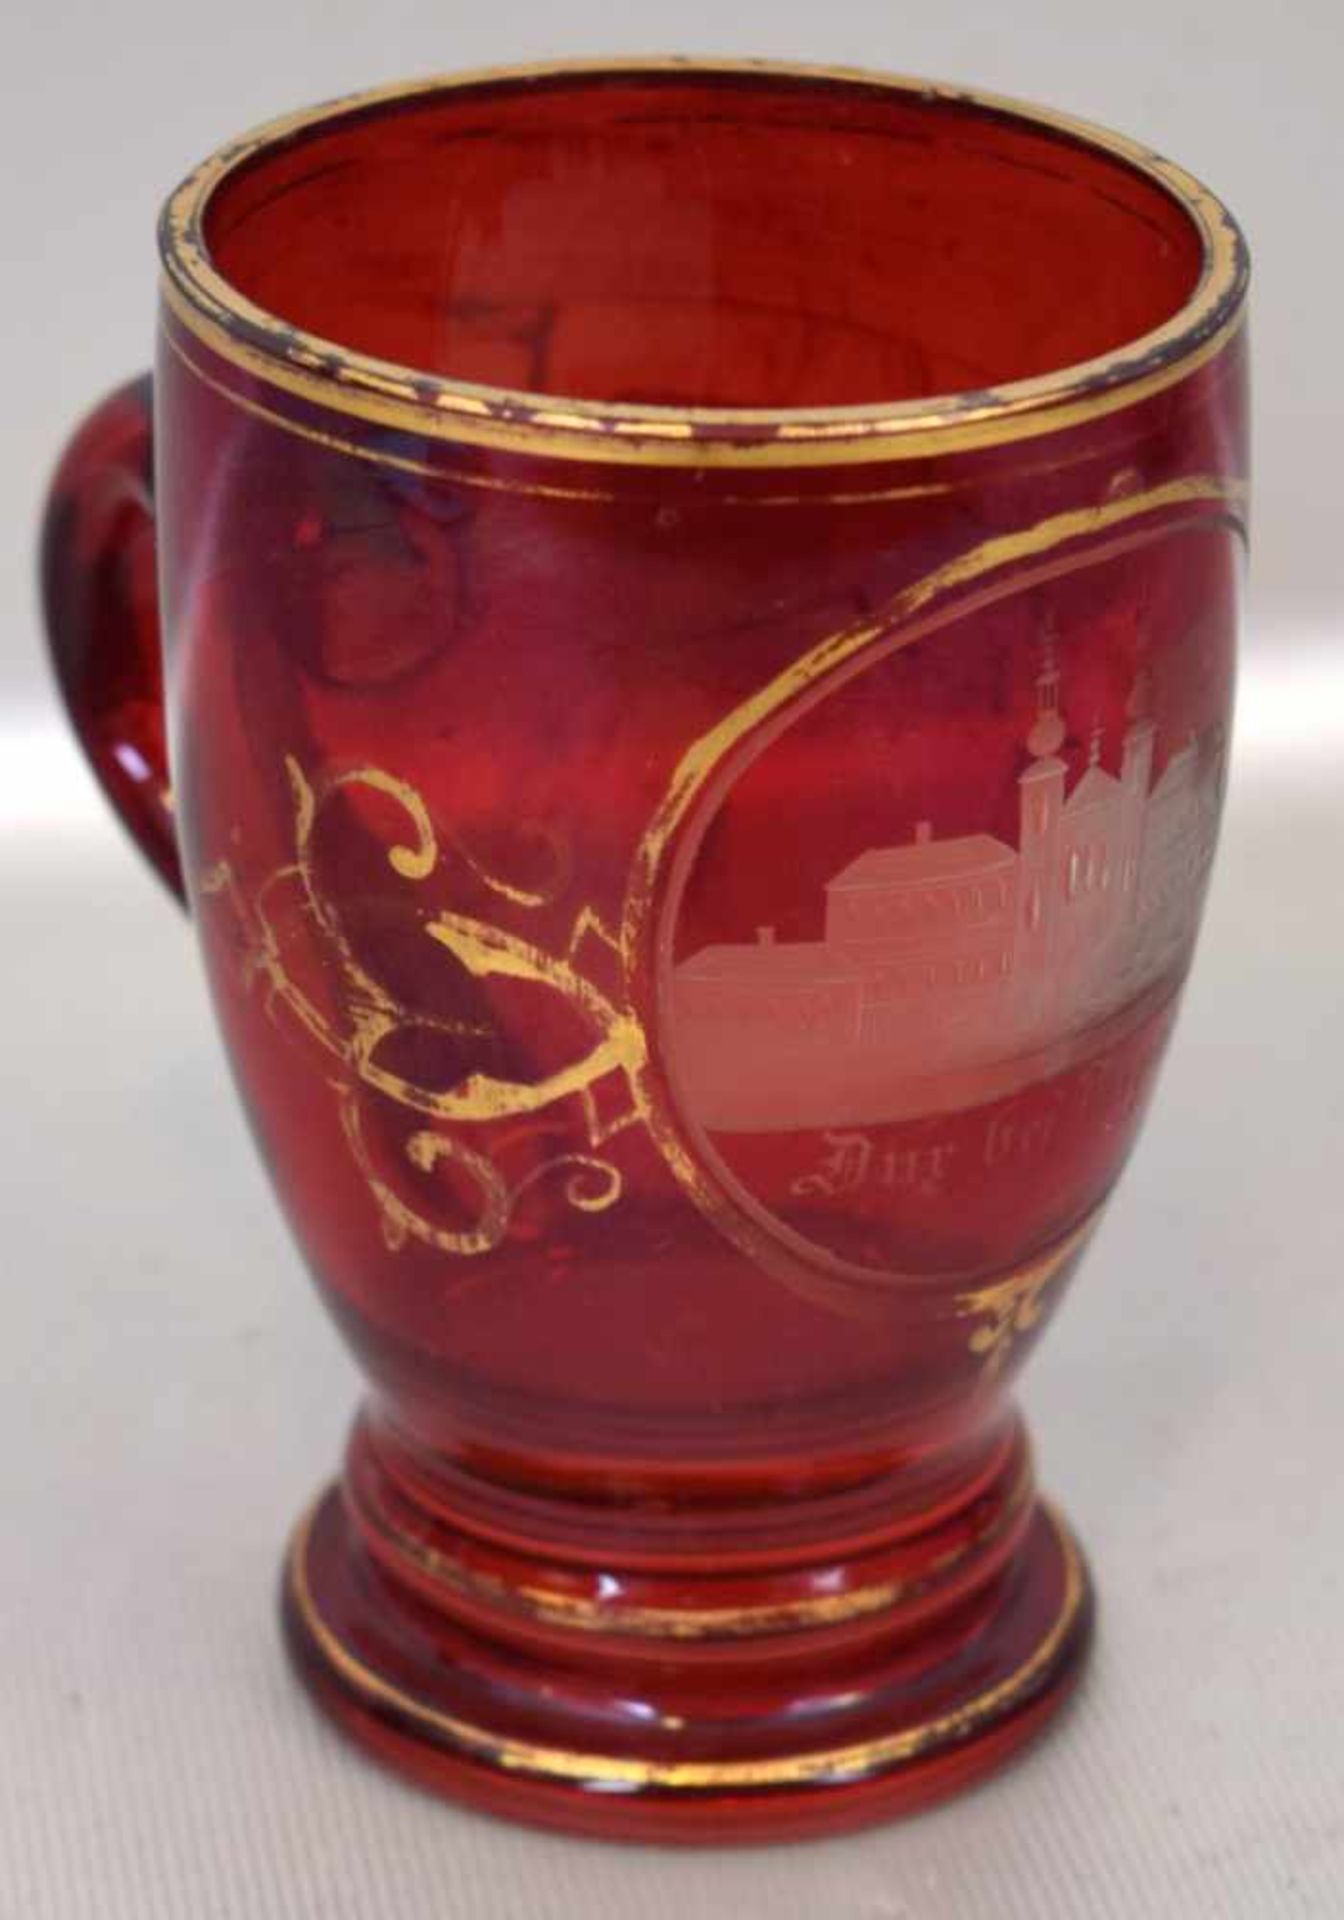 Andenkenglasrubinfarbenes Glas, mit Aufschrift " Burg bei Teblitz", gold verziert, ein Griff, H 11